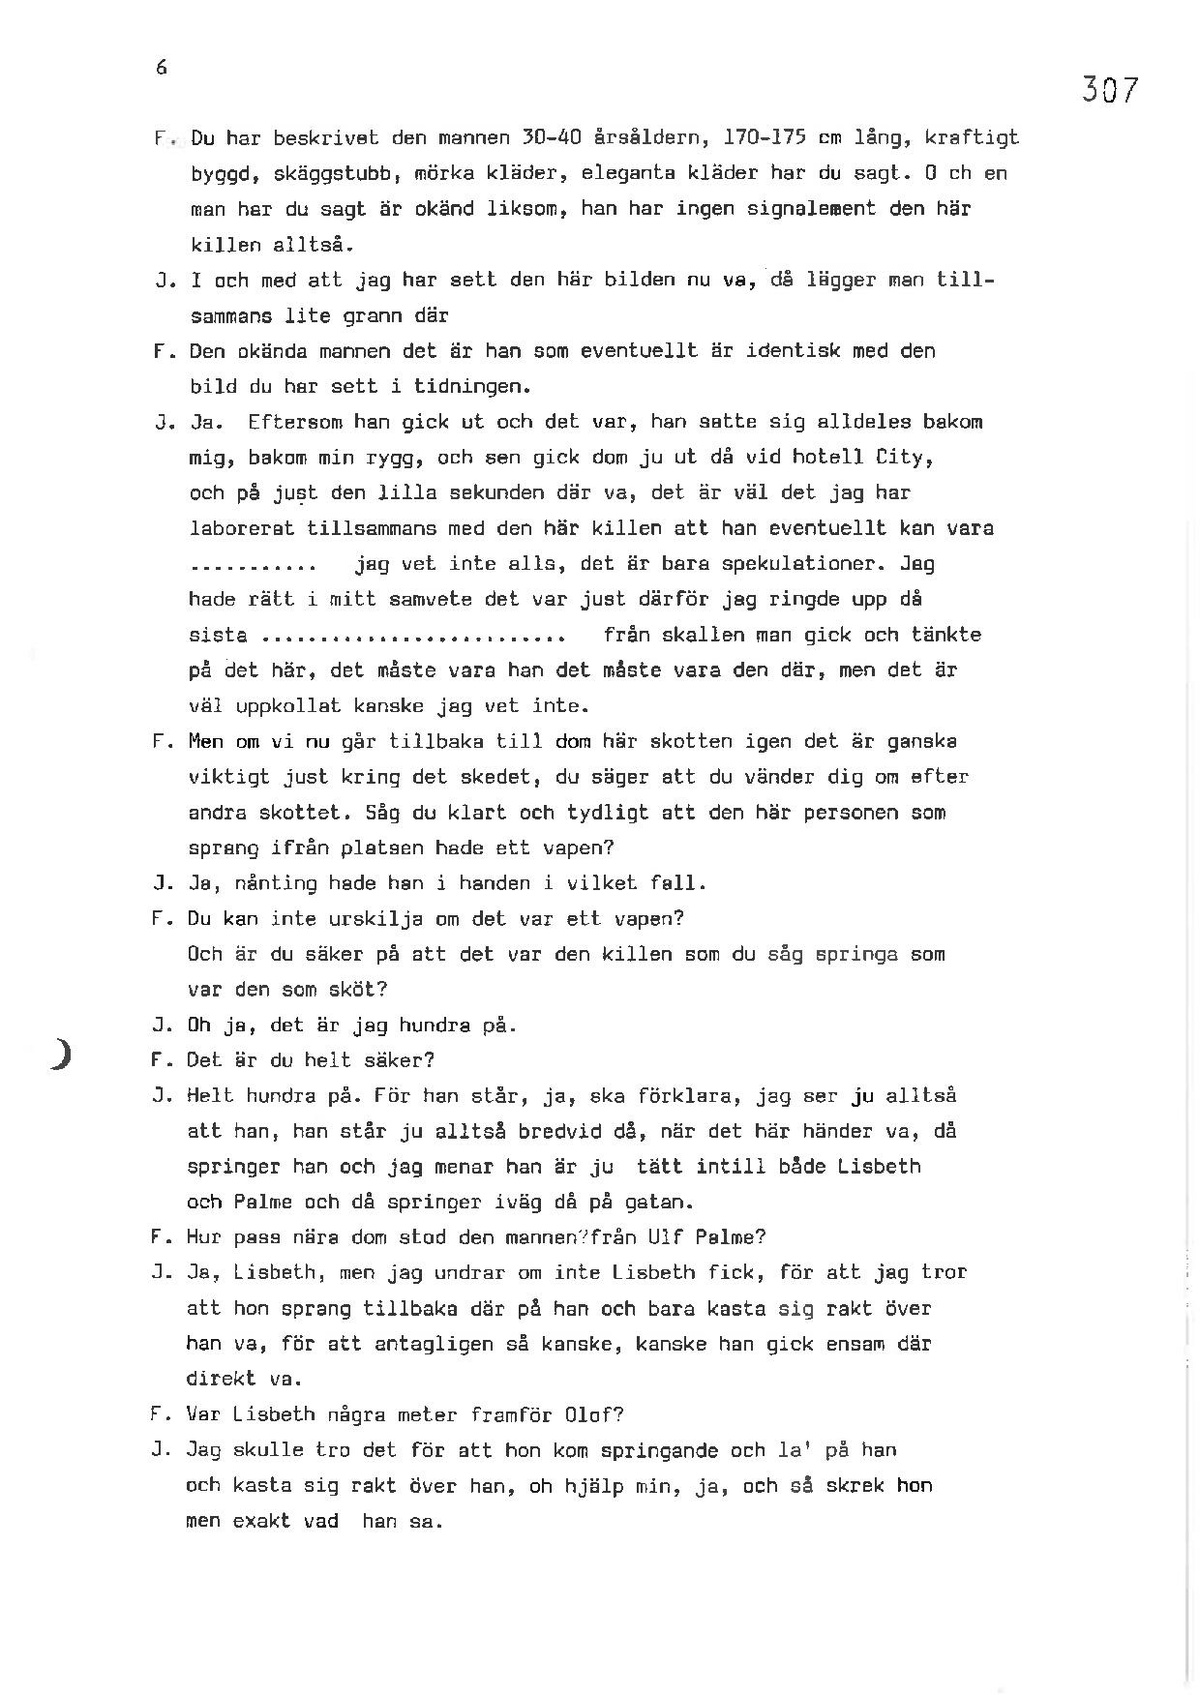 Pol-1986-03-14 EE1971-00-B VITTNESFÖRHÖR-Hans-Johansson.pdf